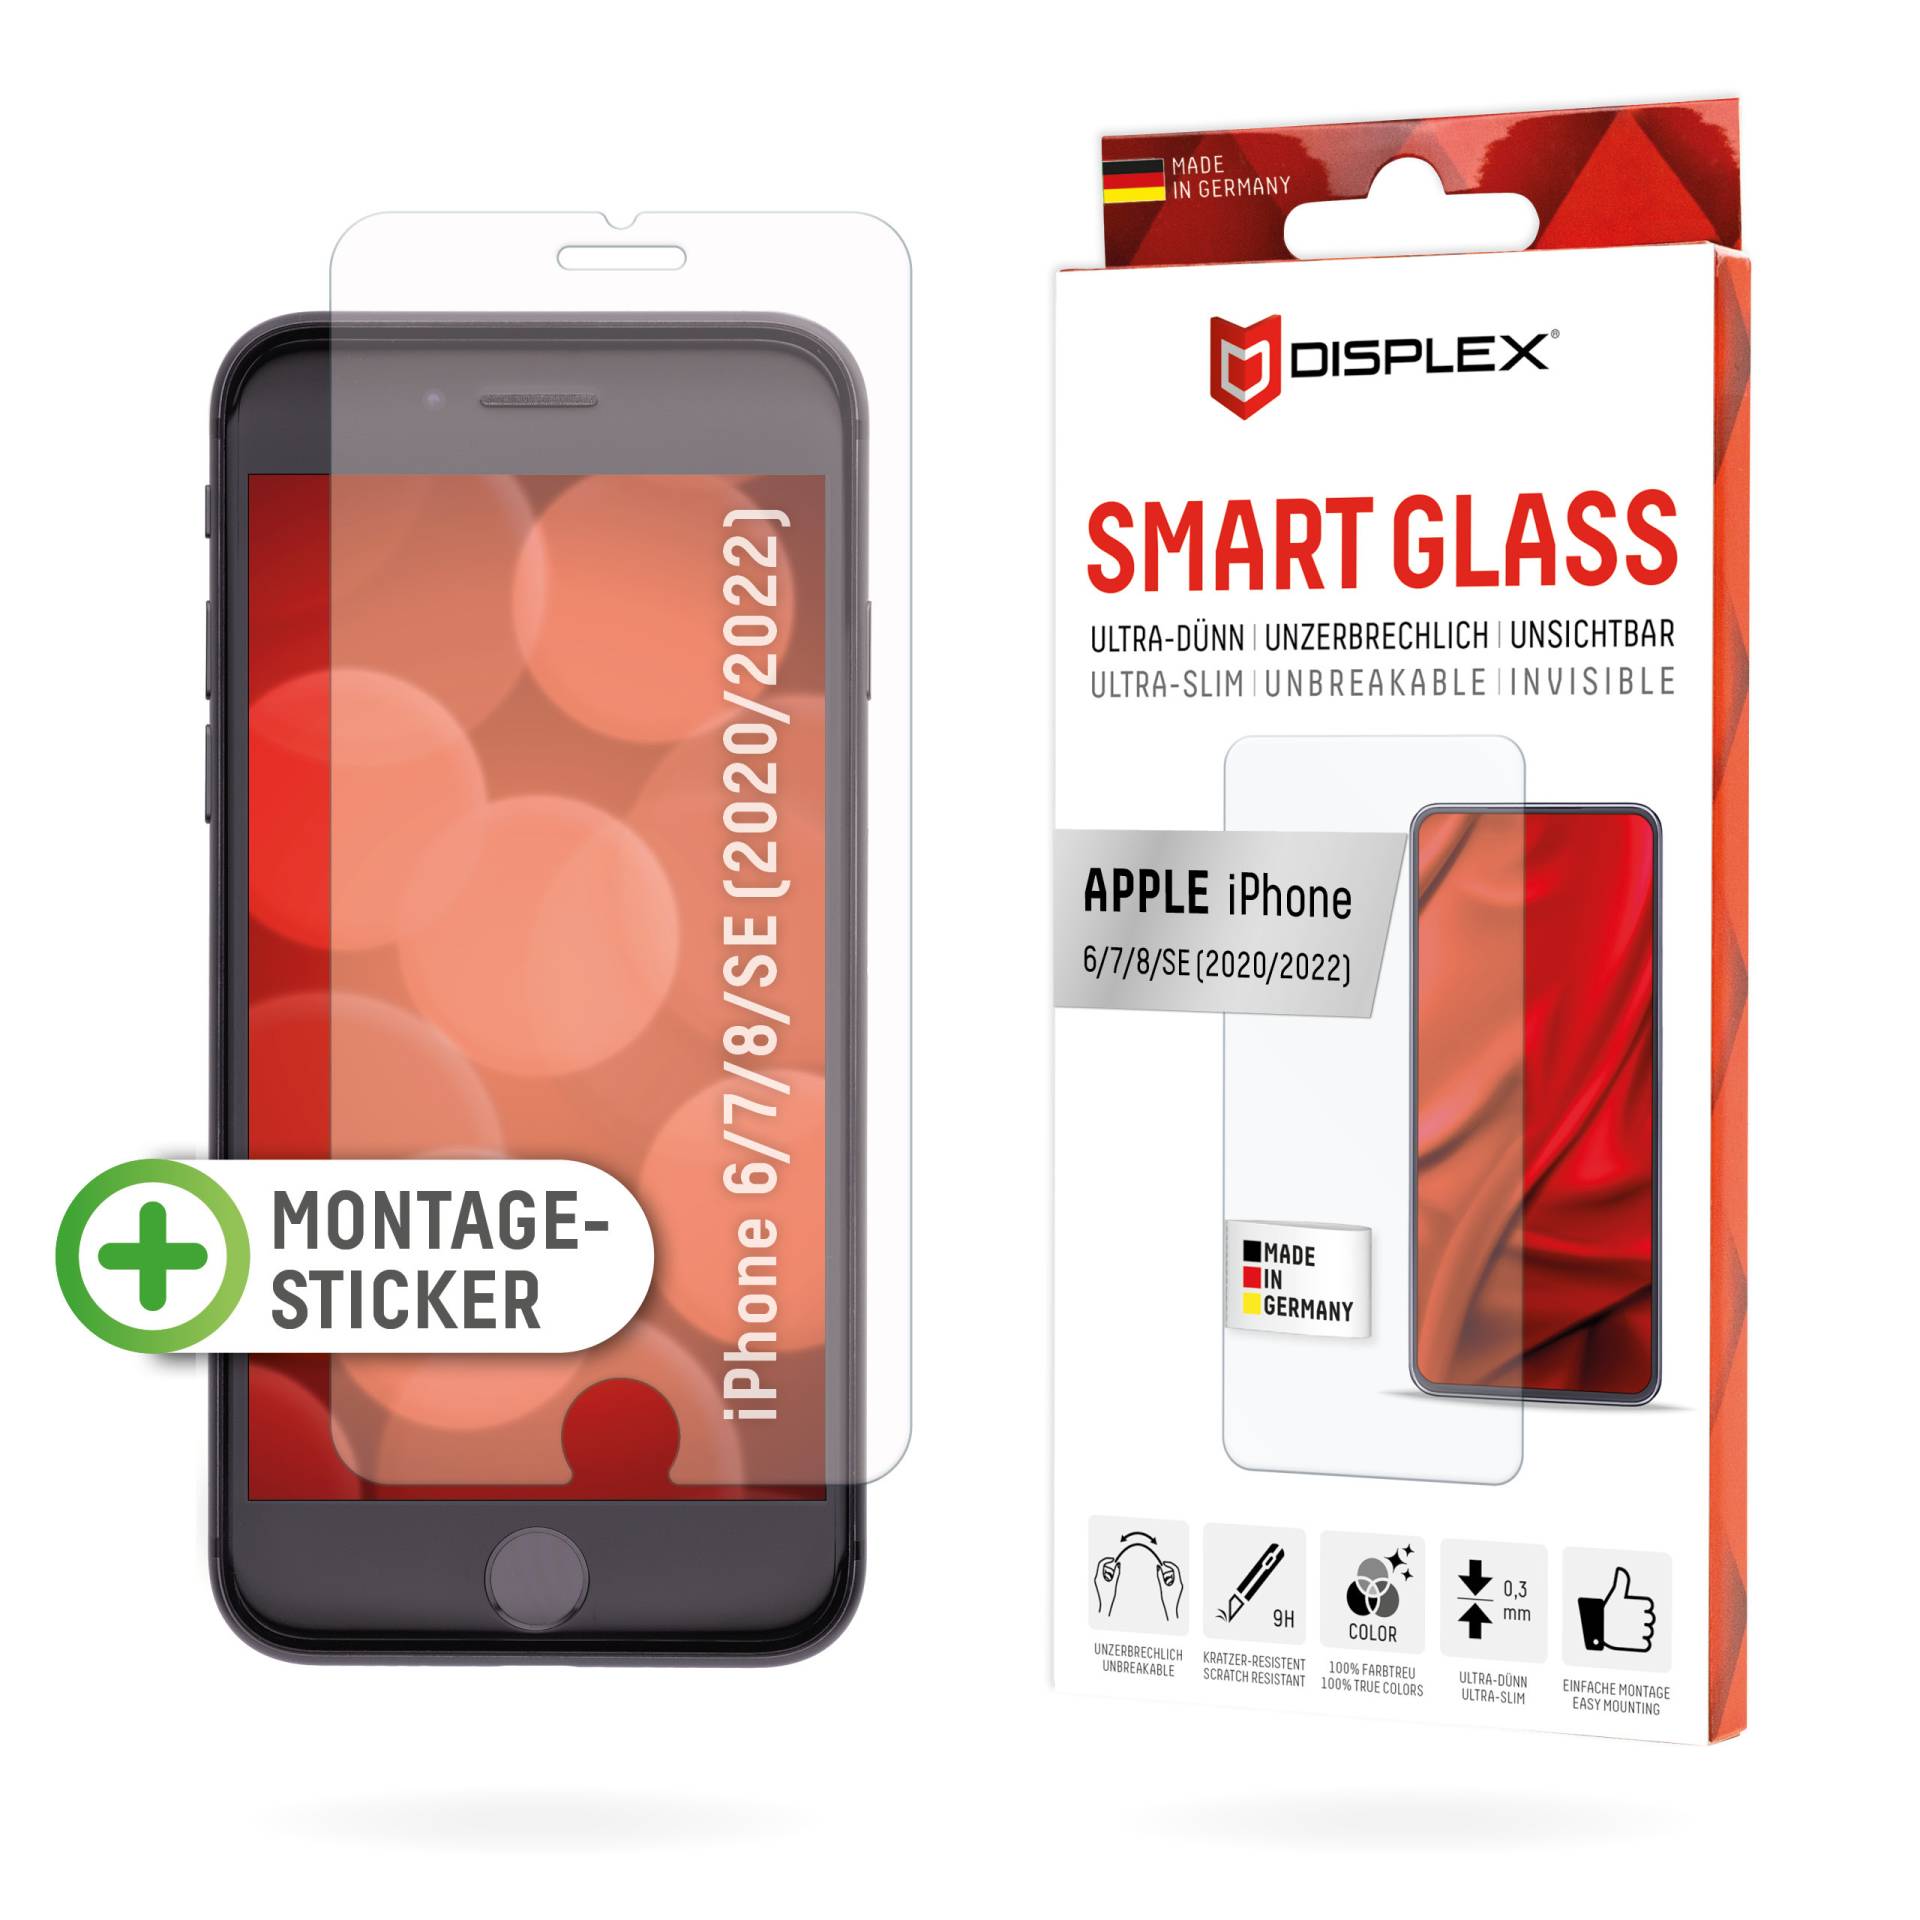 DISPLEX Smart Glass (9H) für Apple iPhone 6/7/8/SE (2020/2022) Montagesticker, unzerbrechlich, ultra-dünn, unsichtbar von Displex